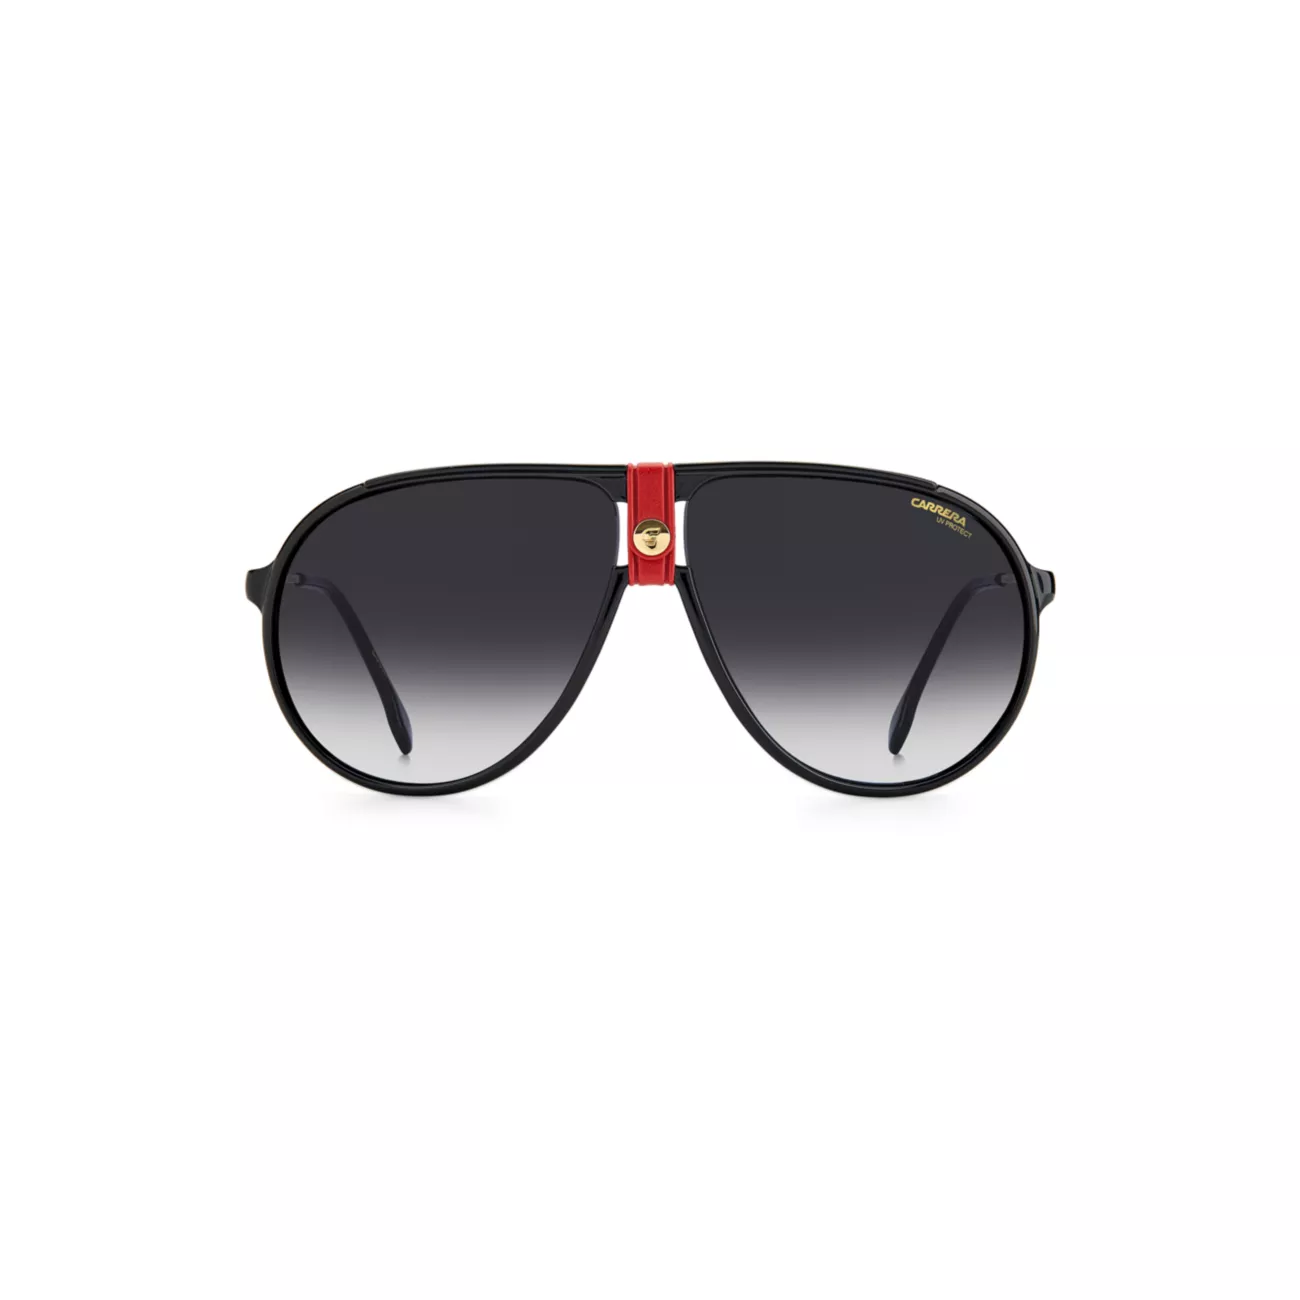 Полированные солнцезащитные очки-авиаторы Gradient 61MM Carrera